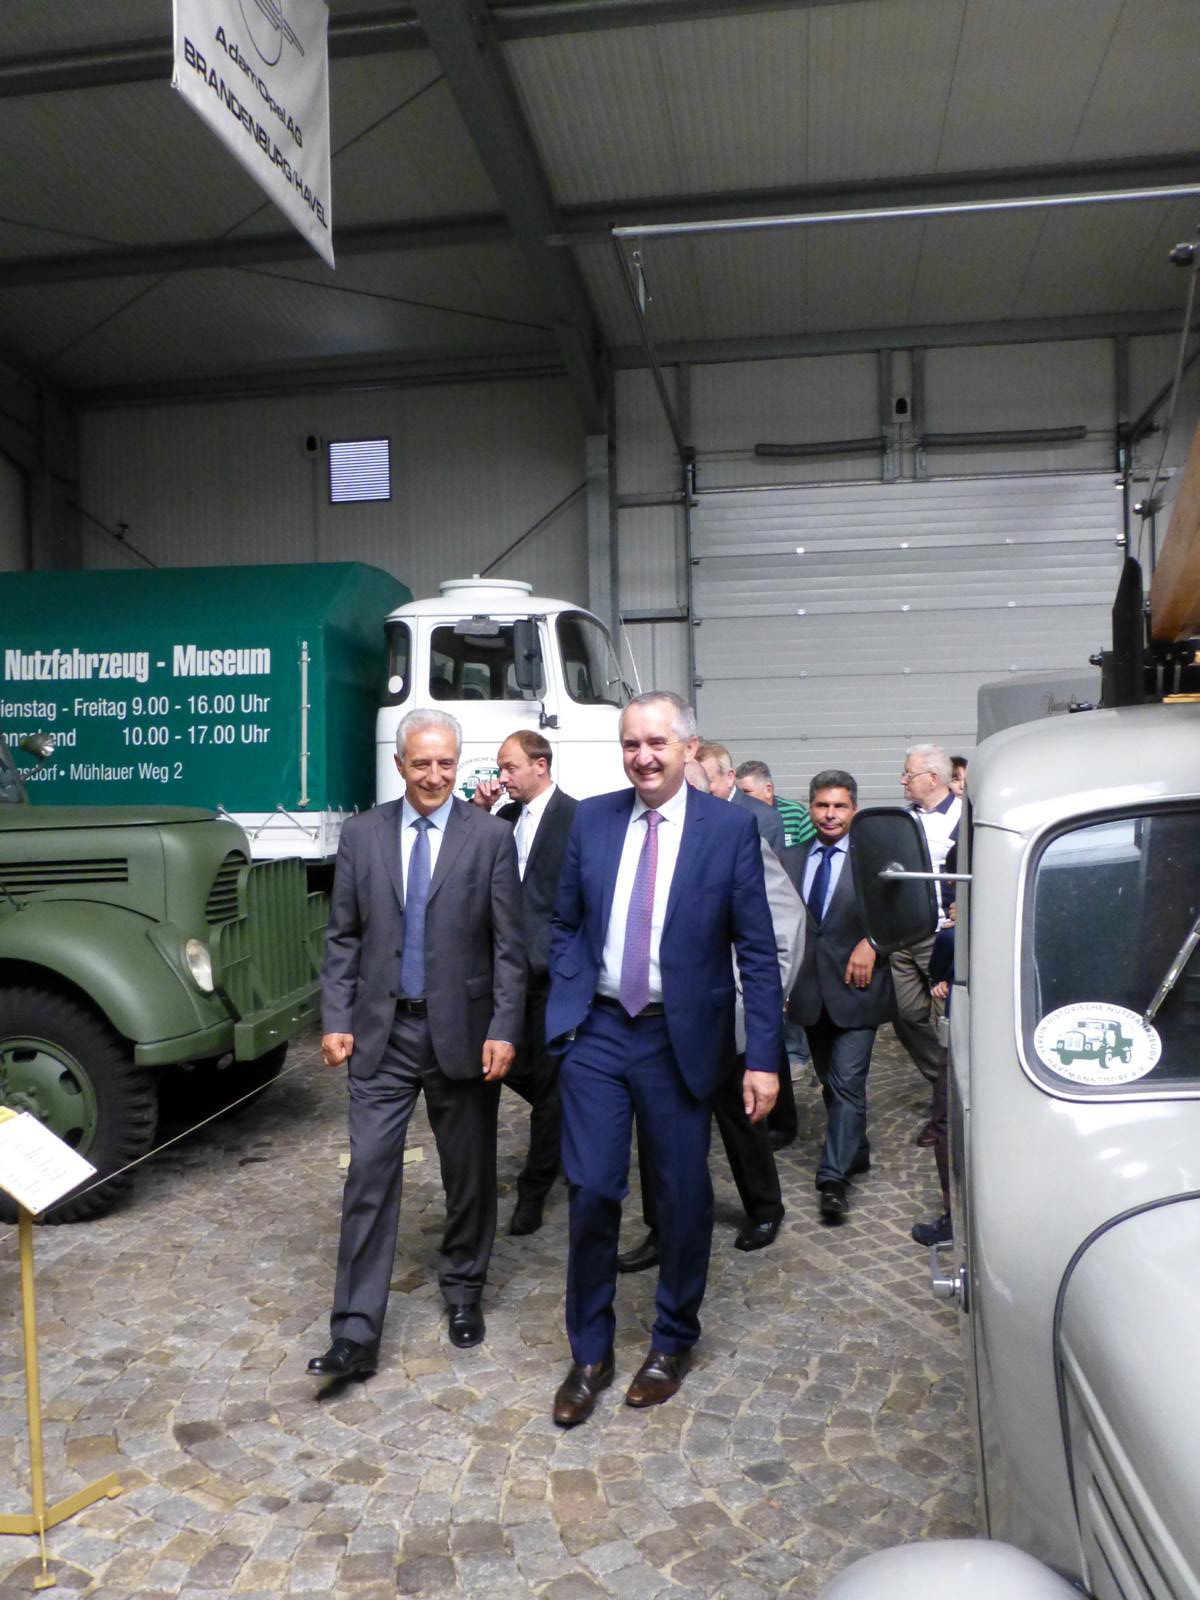 Rundgang im Nutzfahrzeugmuseum Hartmannsdorf mit Ministerpräsident Tillich und Thomas Schmidt MdL